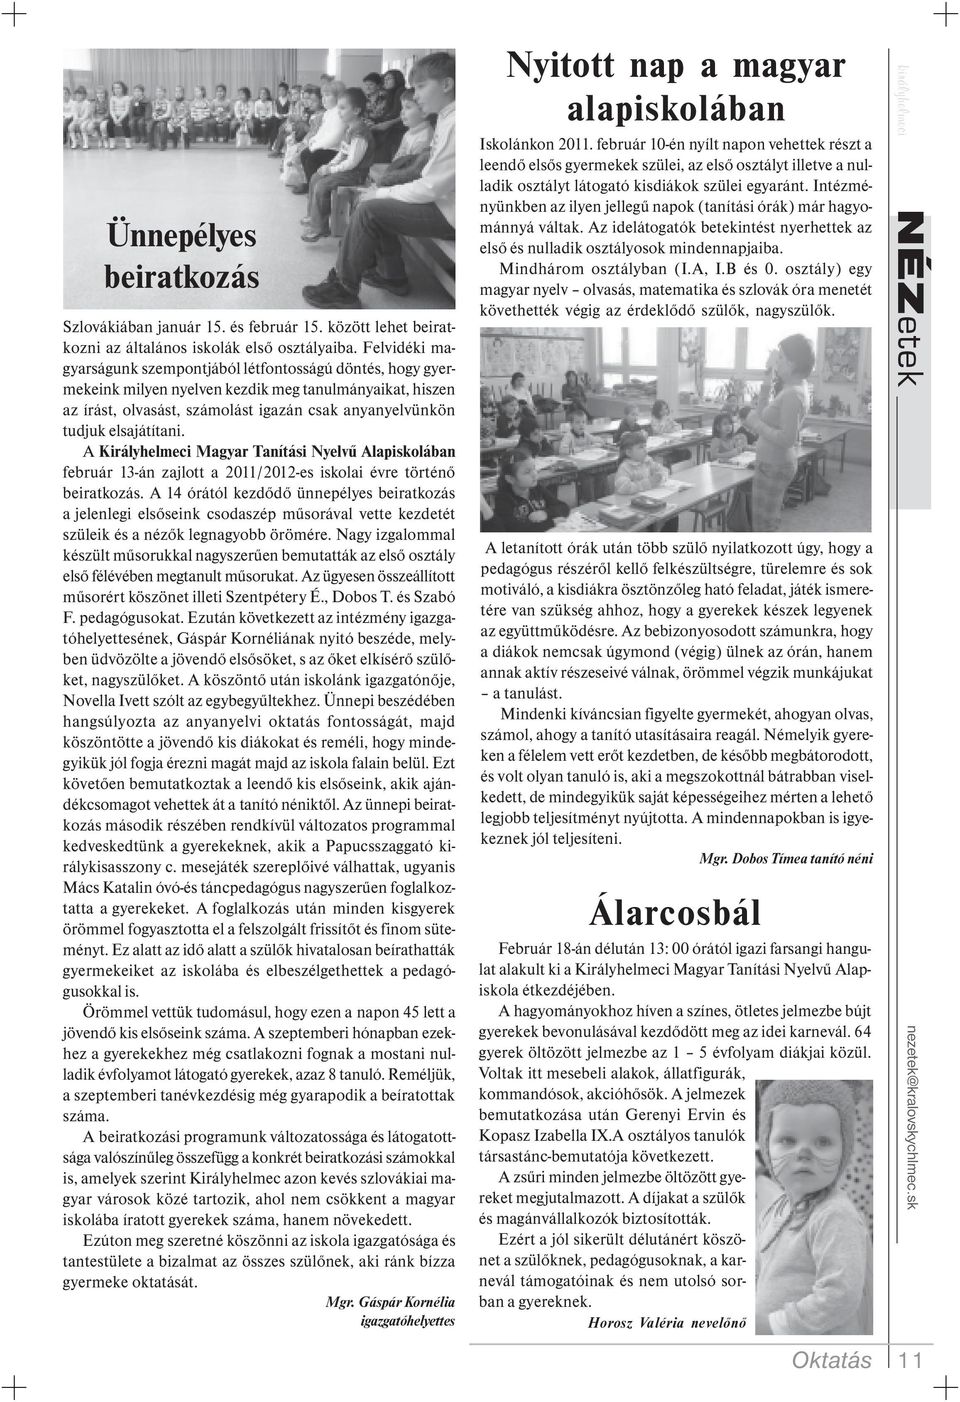 elsajátítani. A Királyhelmeci Magyar Tanítási Nyelvű Alapiskolában február 13-án zajlott a 2011/2012-es iskolai évre történő beiratkozás.